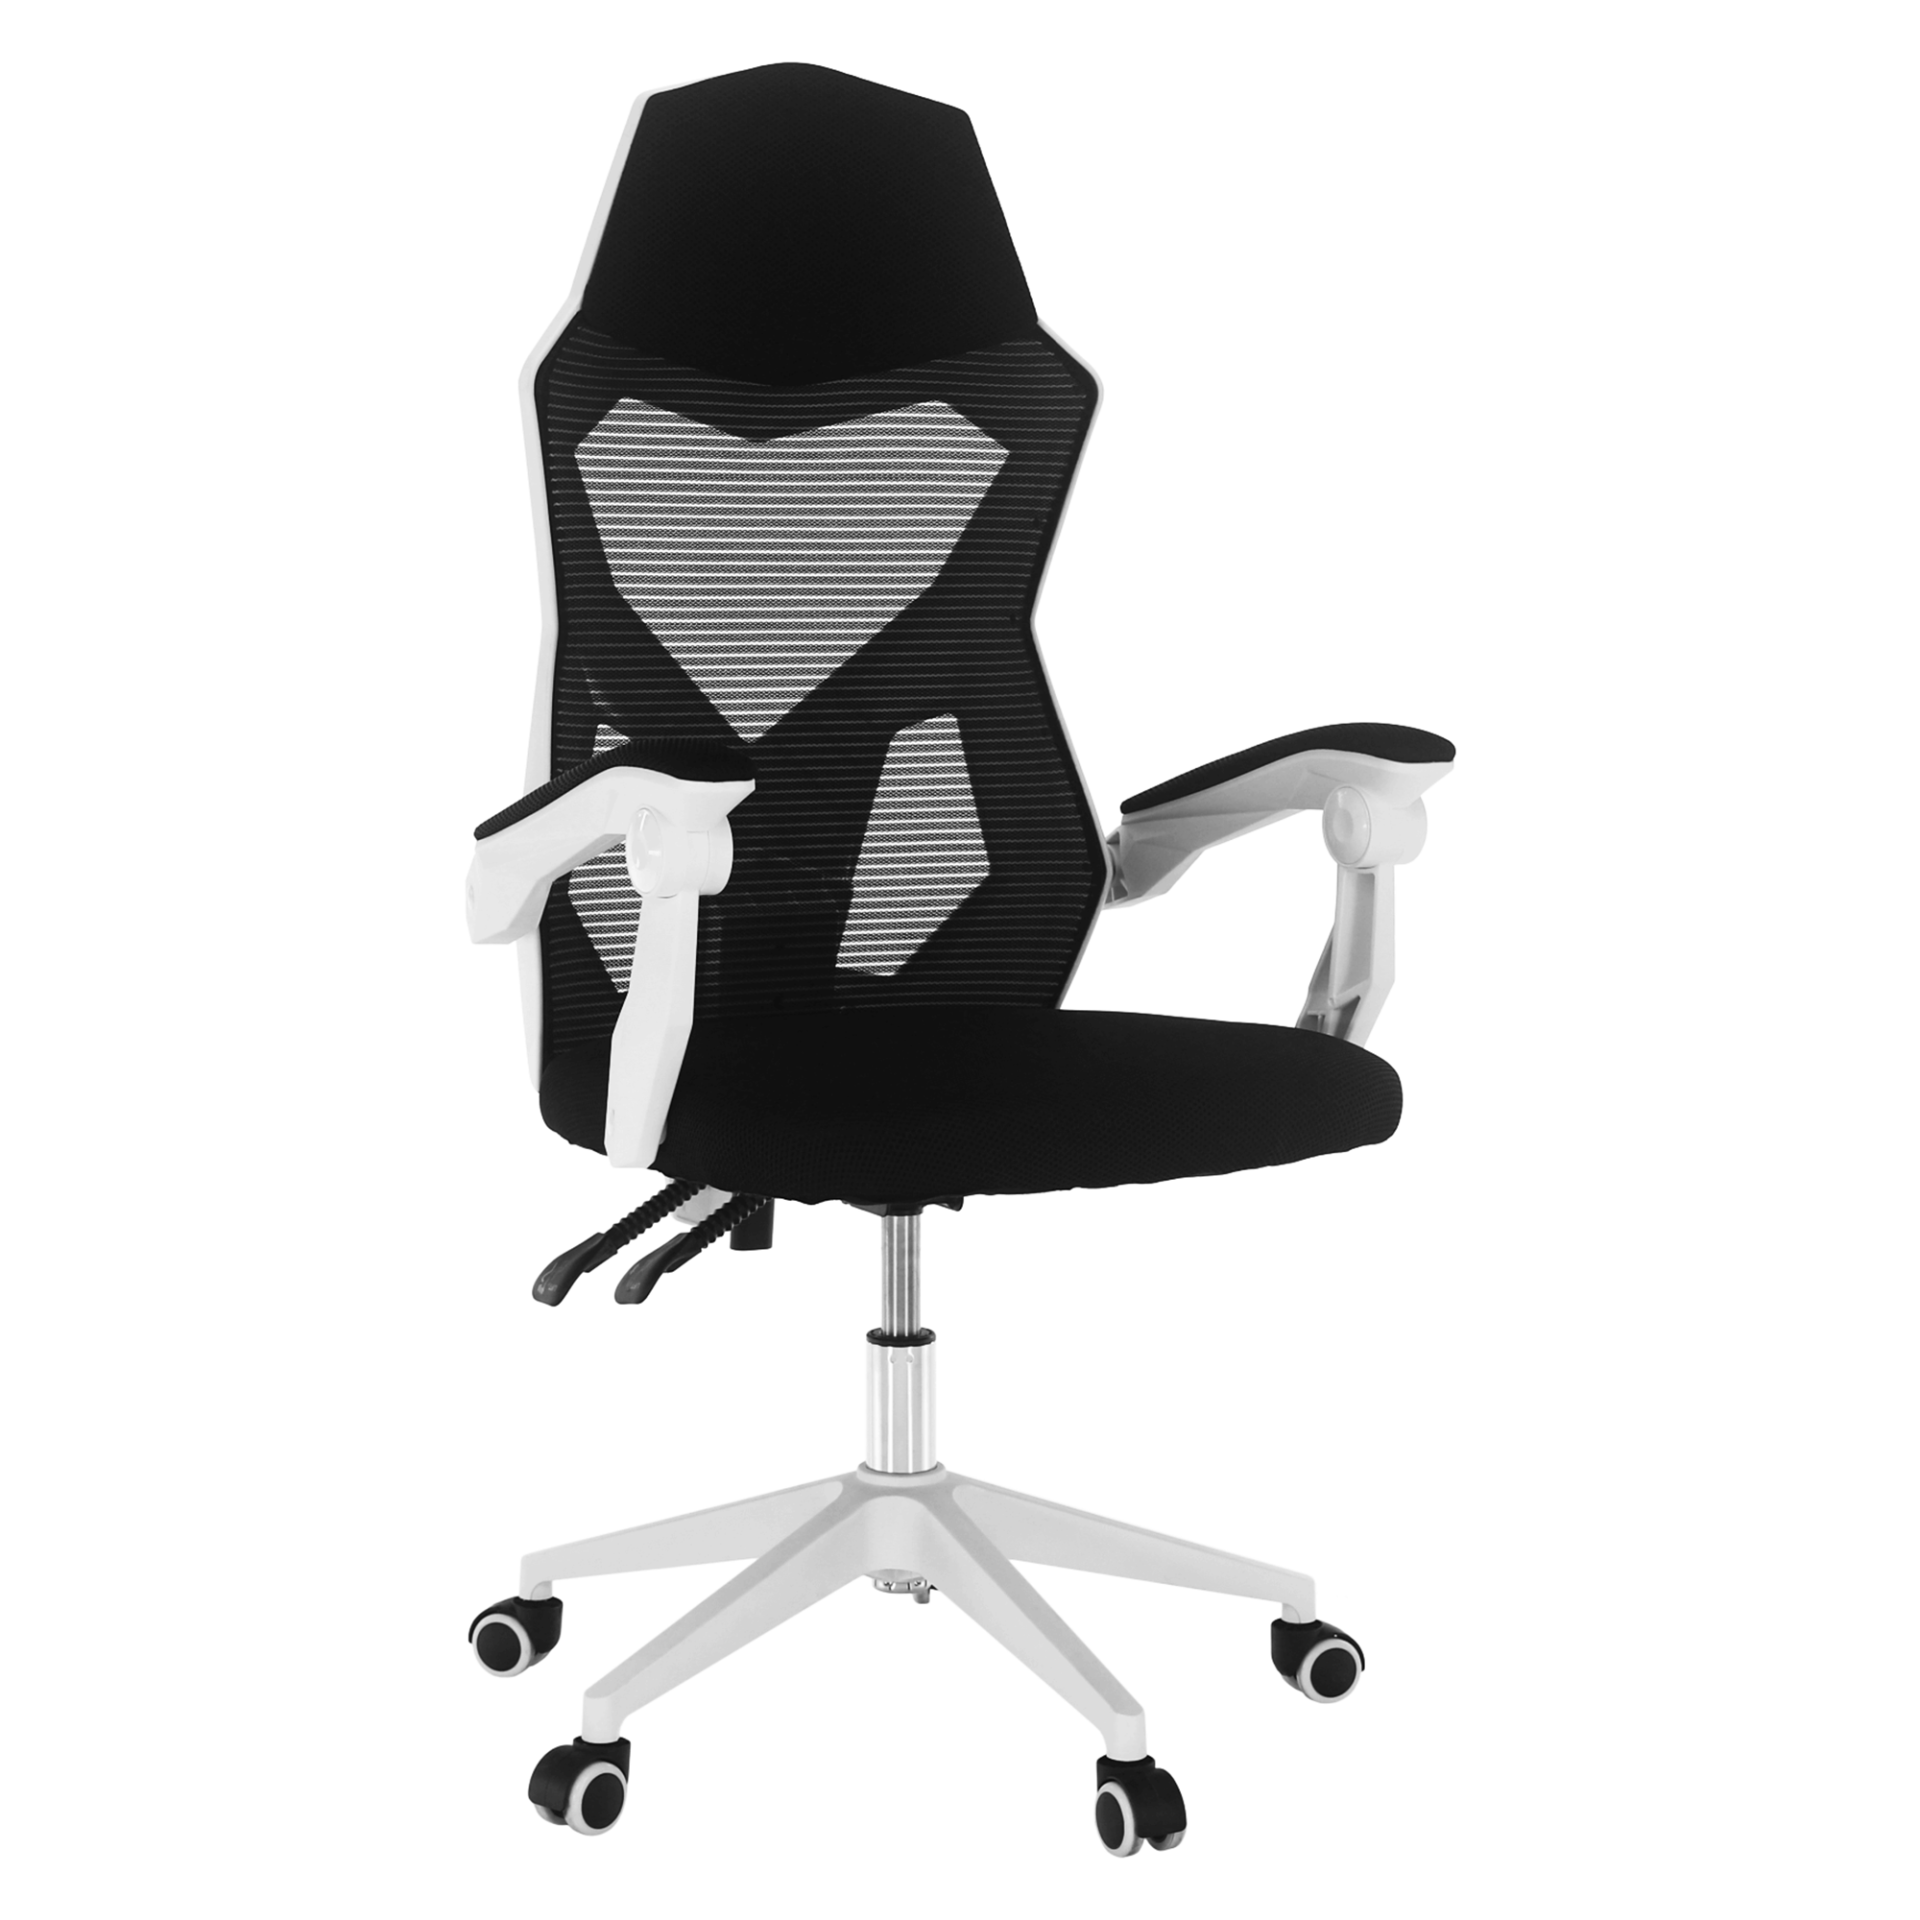 Irodai/gamer szék, fekete/fehér, YOKO